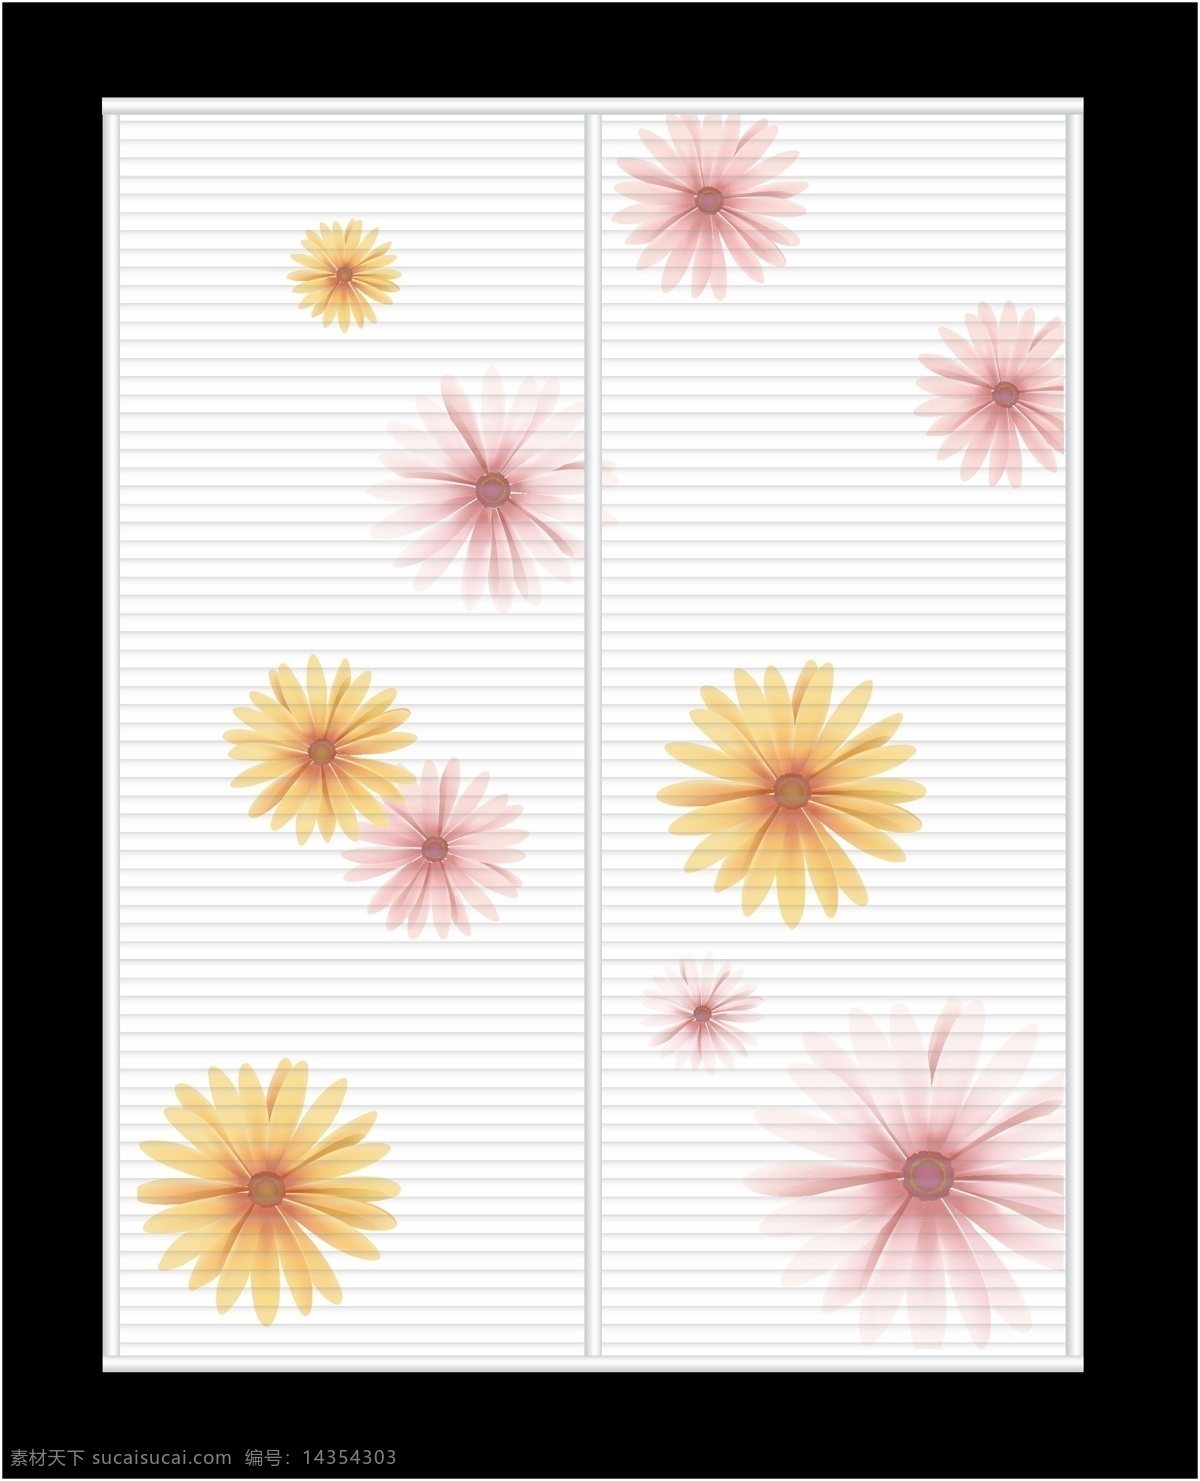 菊花免费下载 粉色 黄色 菊花 移门 移门图案 金盏菊 波浪板 矢量 装饰素材